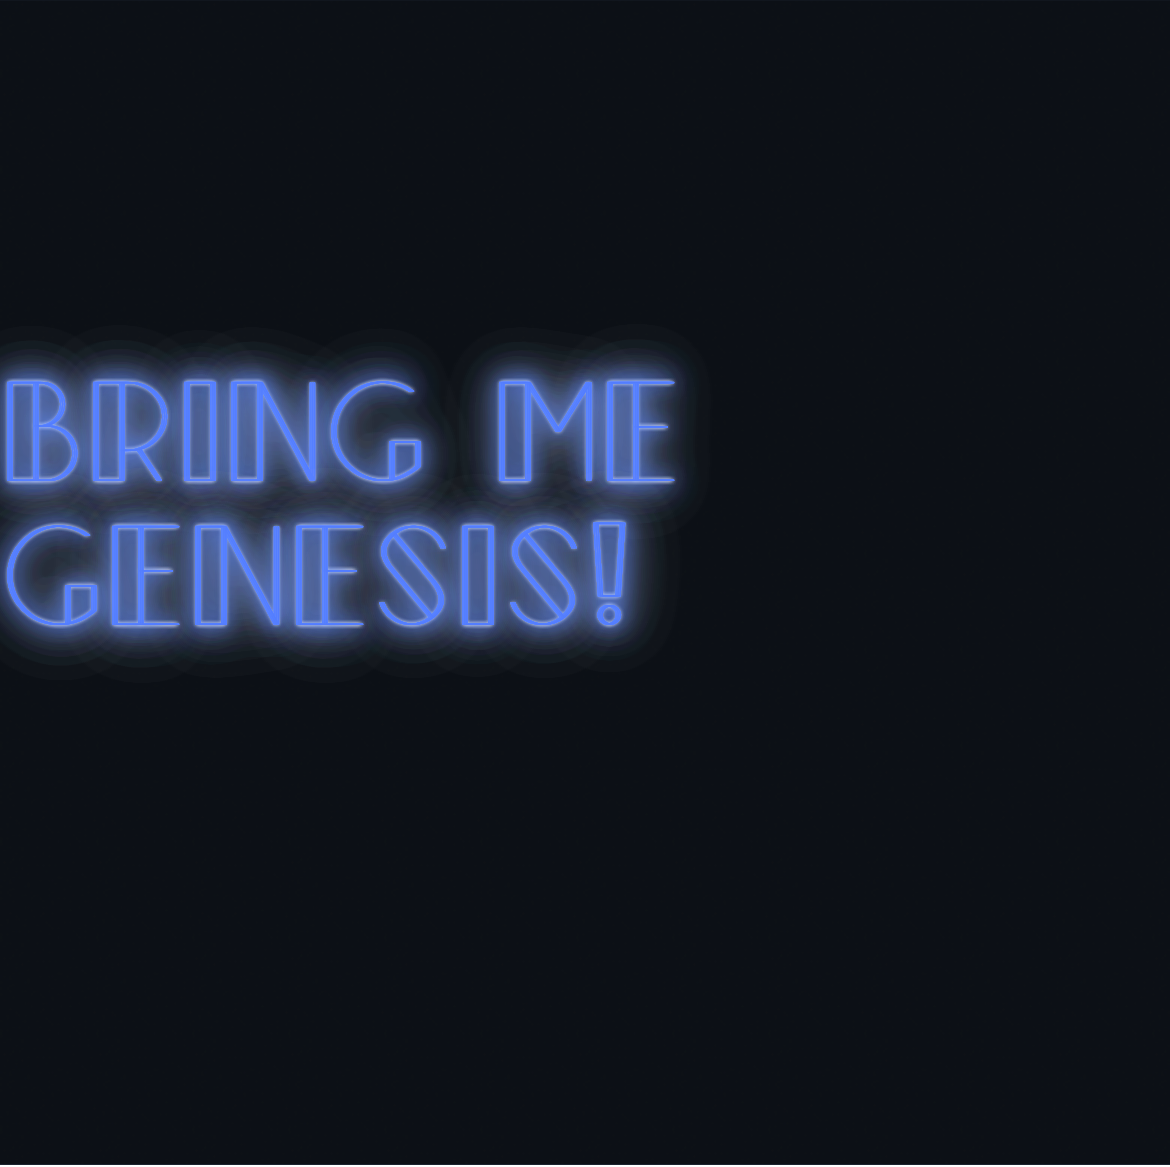 Custom neon sign - Bring me Genesis!